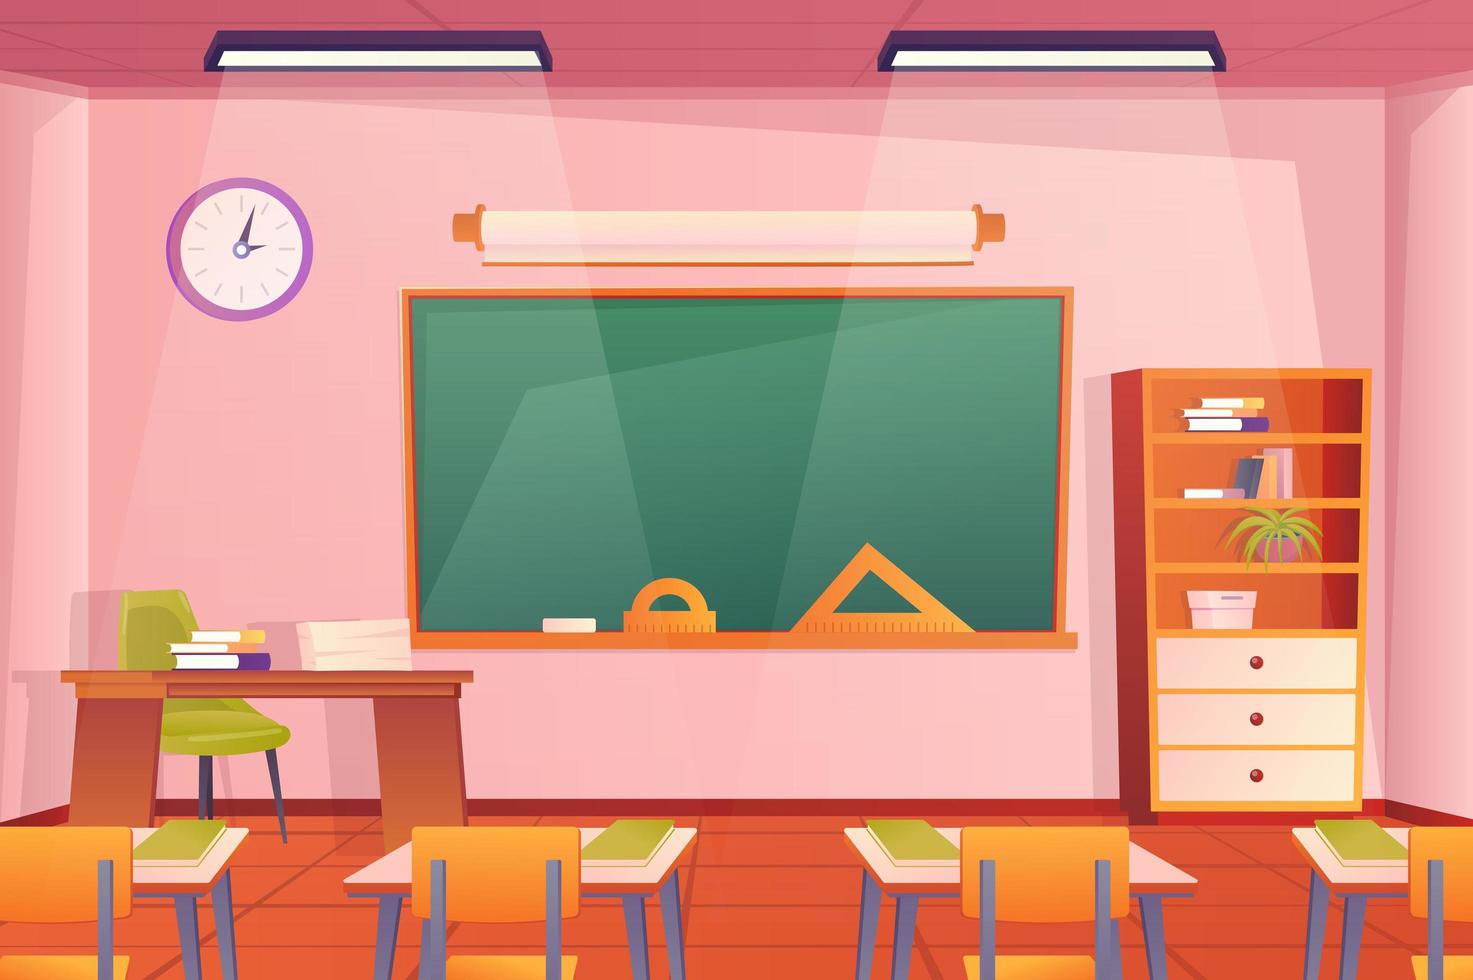 school klas interieur concept in platte cartoon design. kamer- en meubelbehang. klas met leerlingenbureaus, stoelen, lerarenbureau, krijtbord, boekenkast en decor. vector illustratie achtergrond